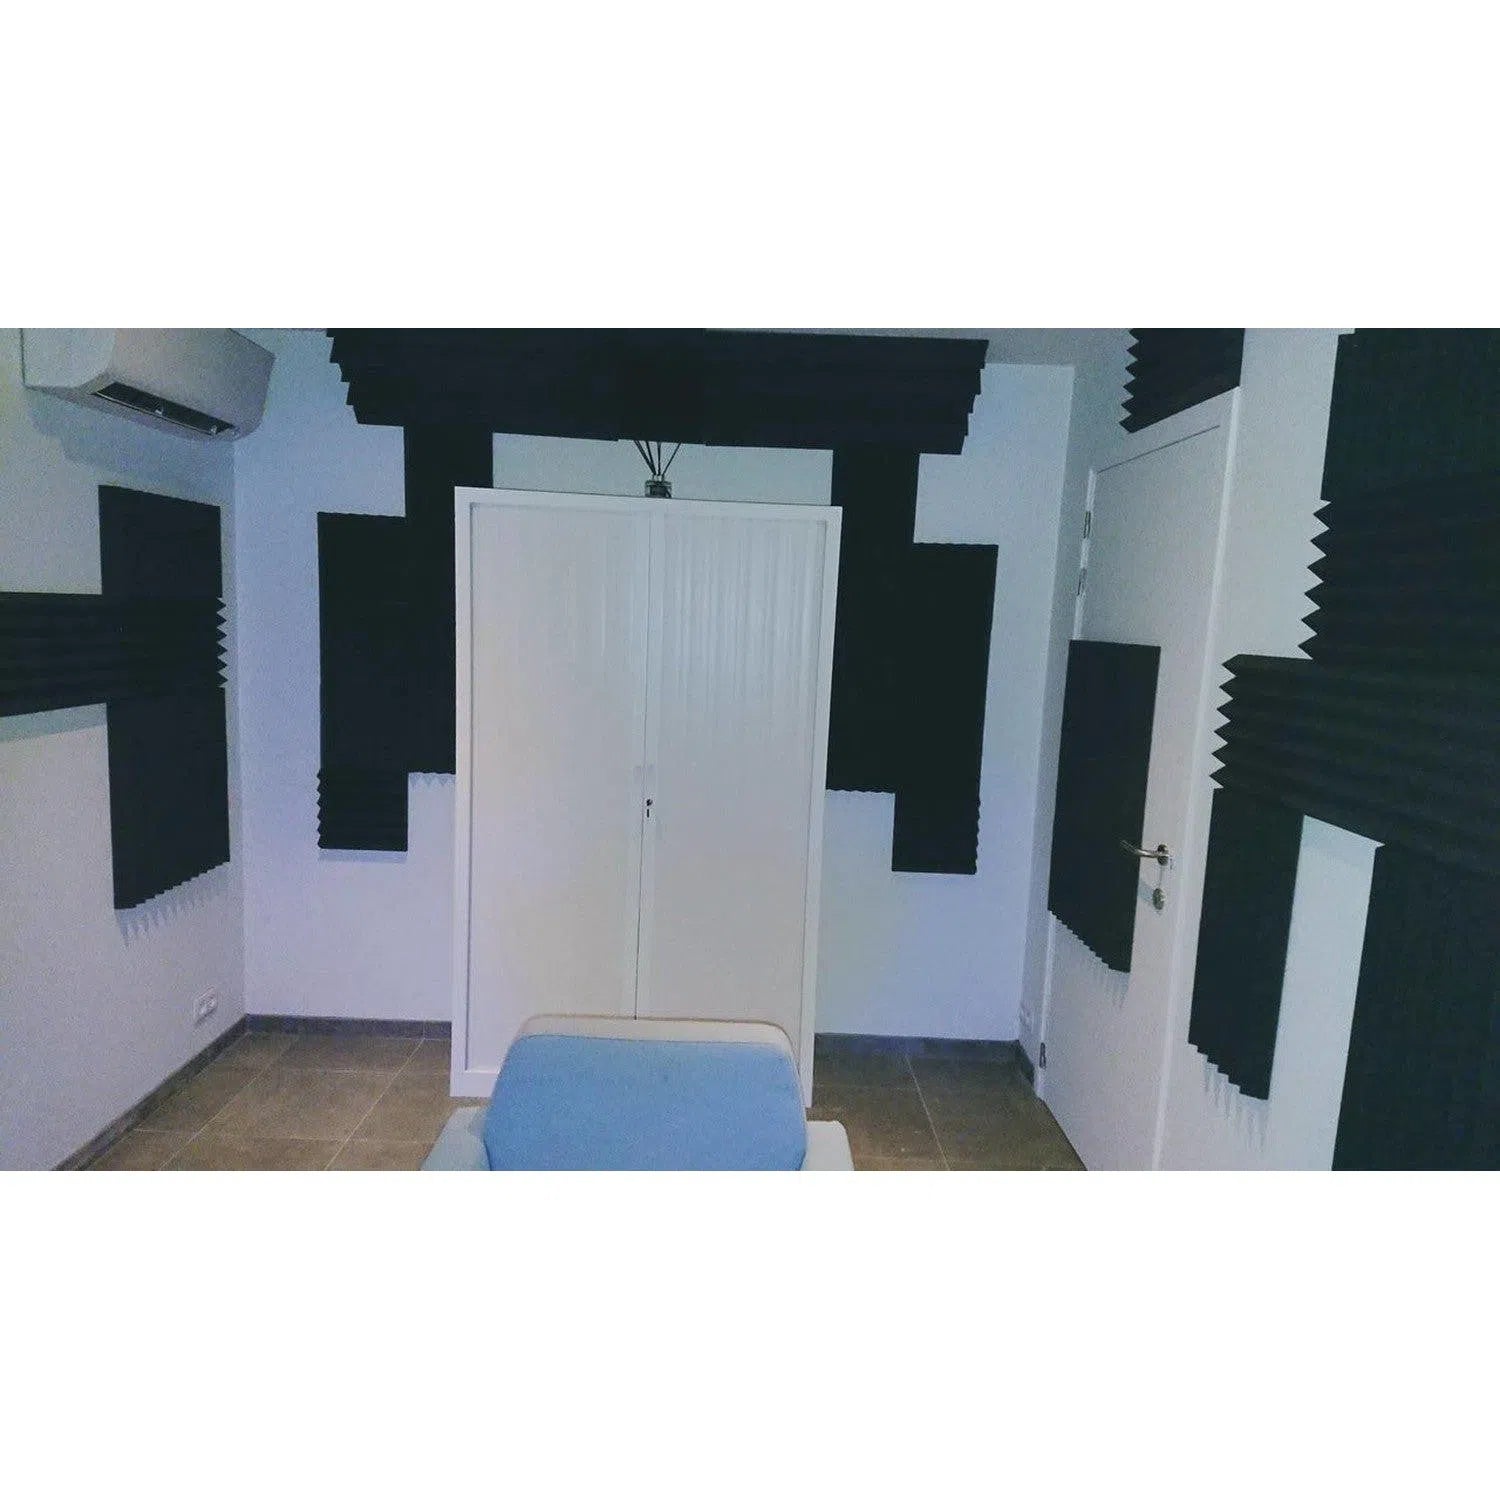 Pro Set Studio Foam Compleet voor Grotere Studios & Ruimtes